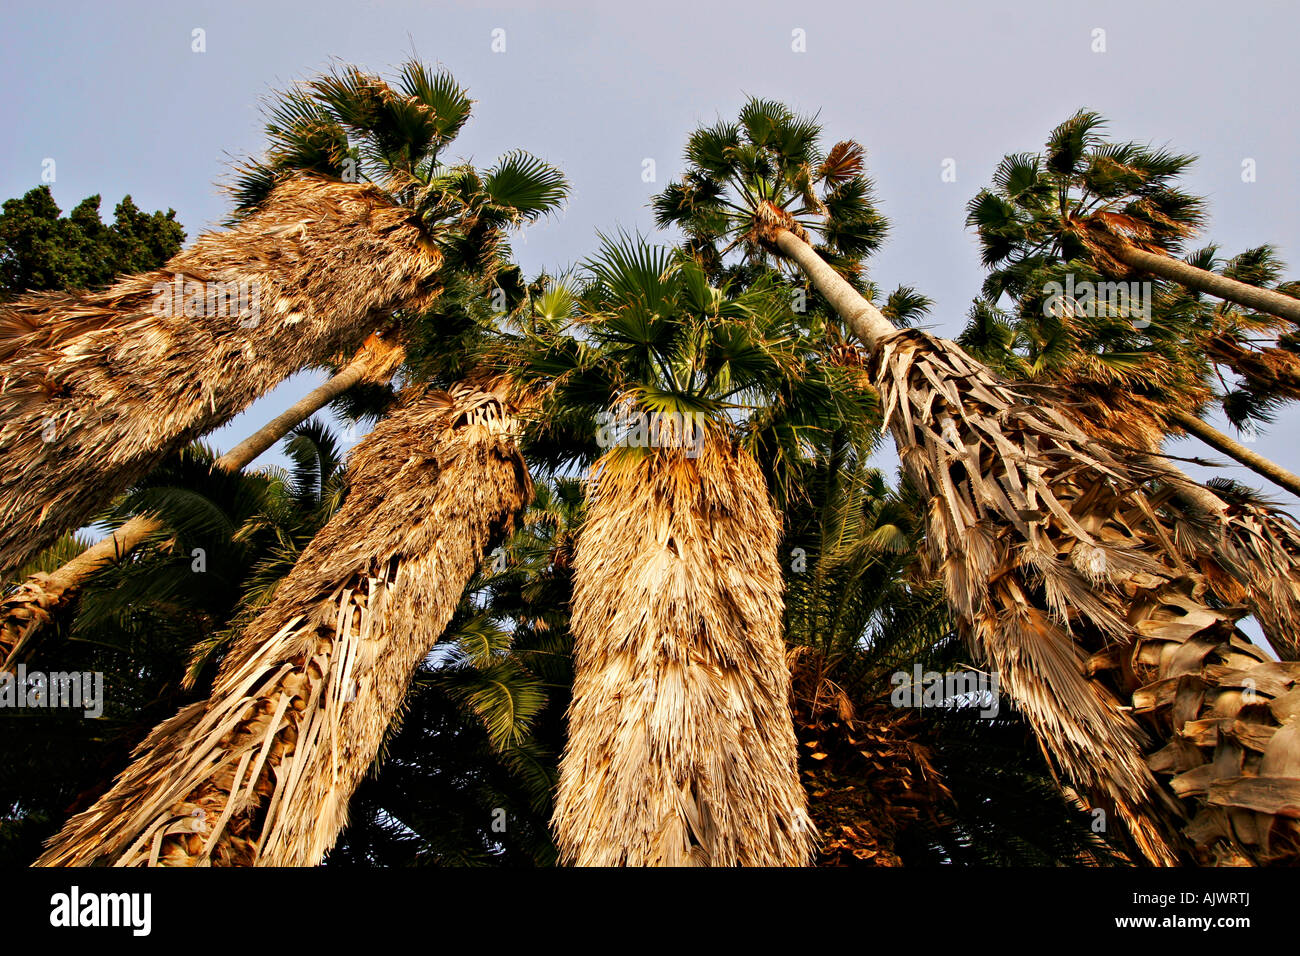 Vrc Kroatien Dubrovnik, Palmen an der Kroatischen Mittelmeerkueste | Croatie, palmiers de la côte Méditerranéenne Banque D'Images